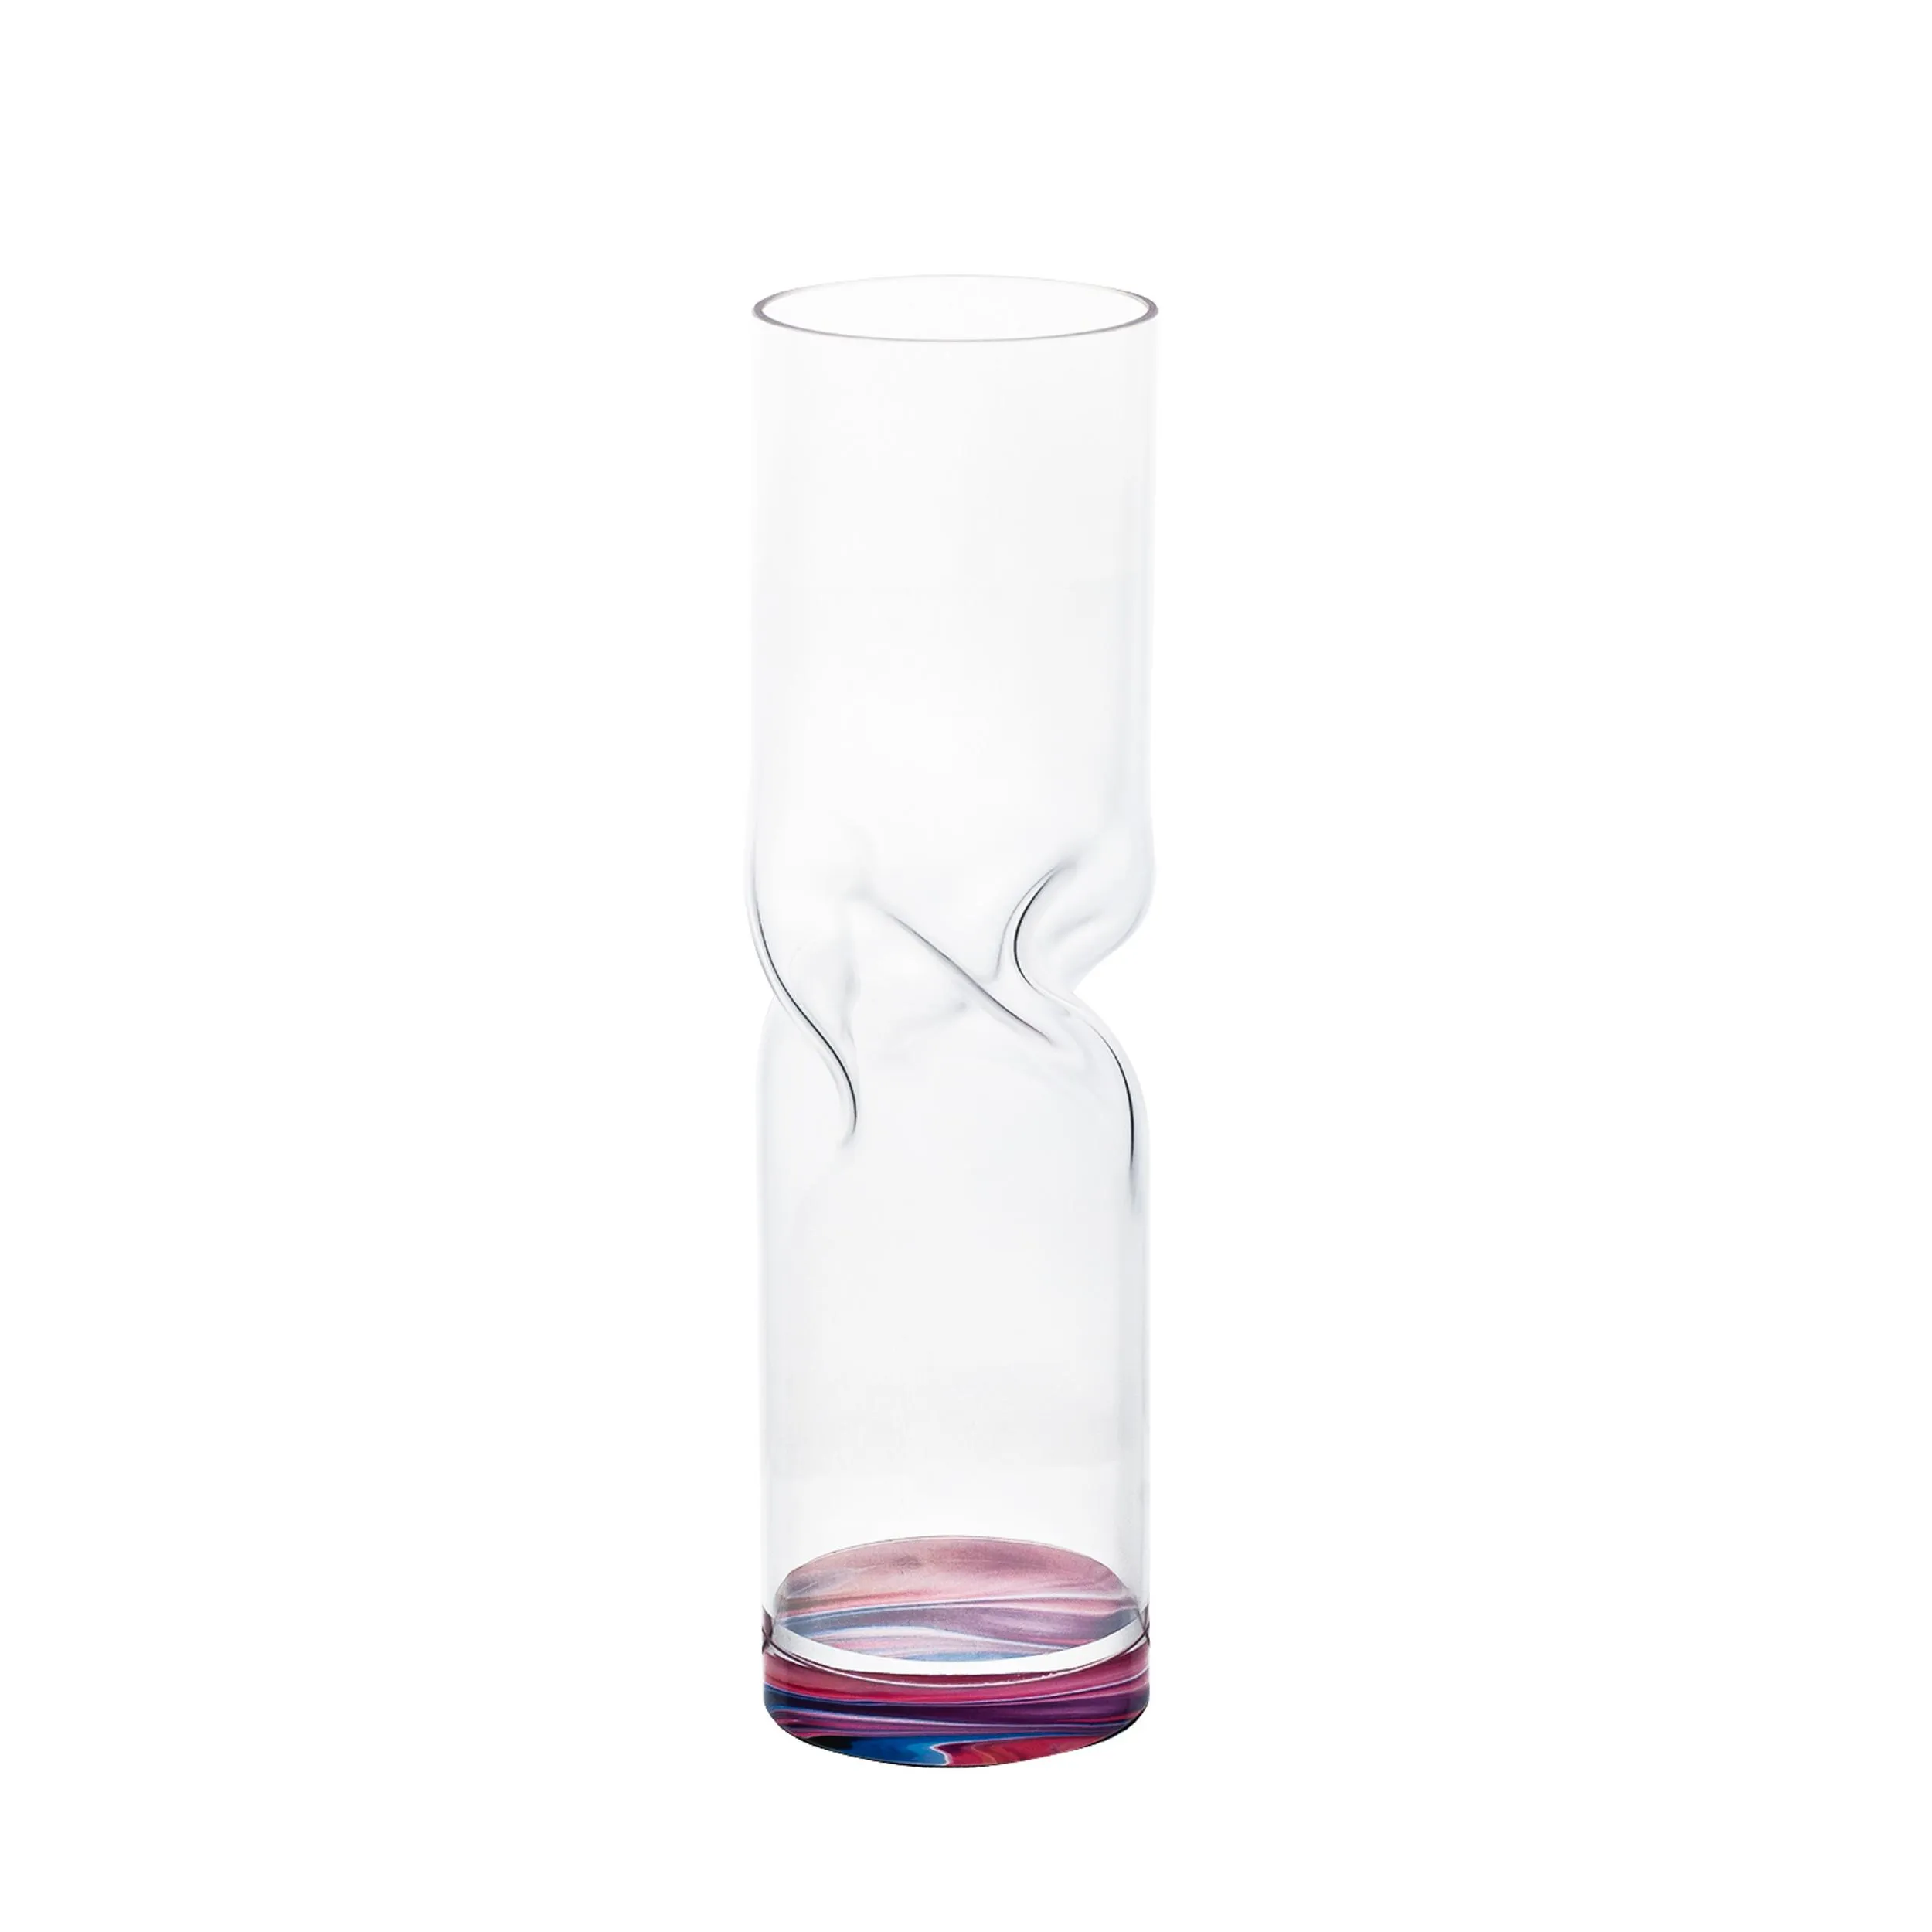 Vaso Portafiori di arredo in cristallo acrilico Bloom Small diametro 7xh25 cm contenitore trasparente incolore, spessore 5 mm